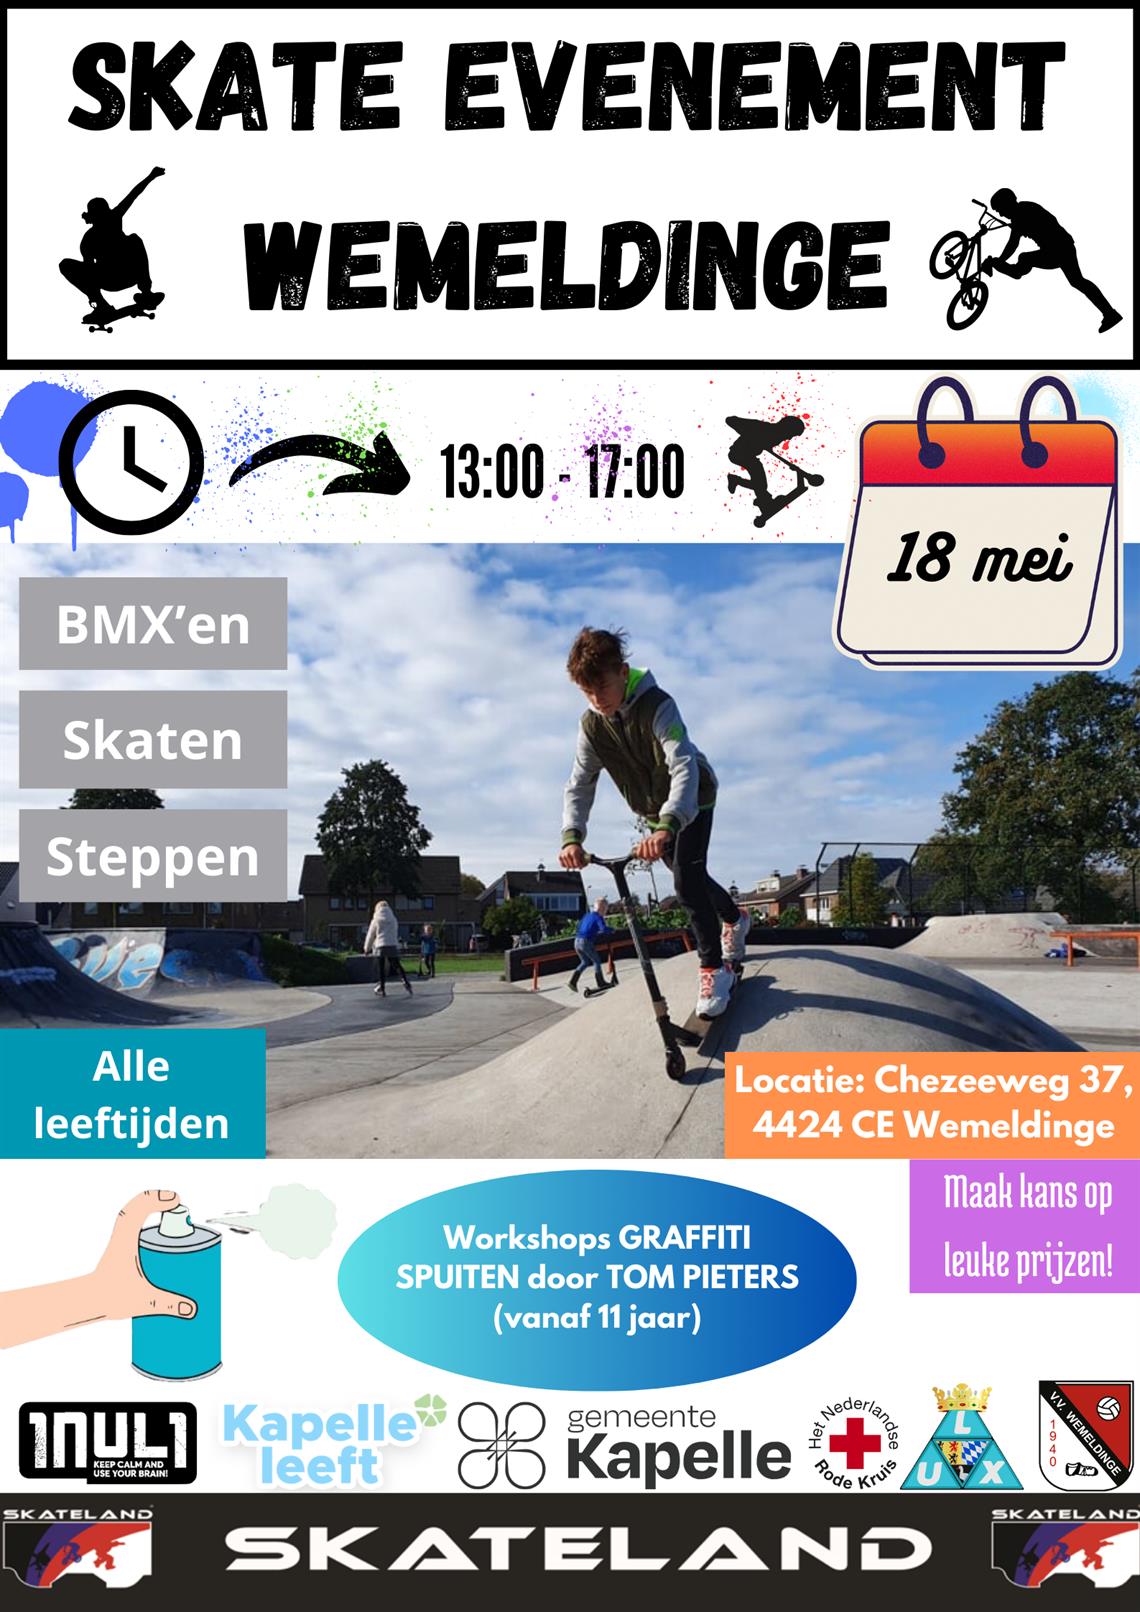 Skate-Evenement Wemeldinge